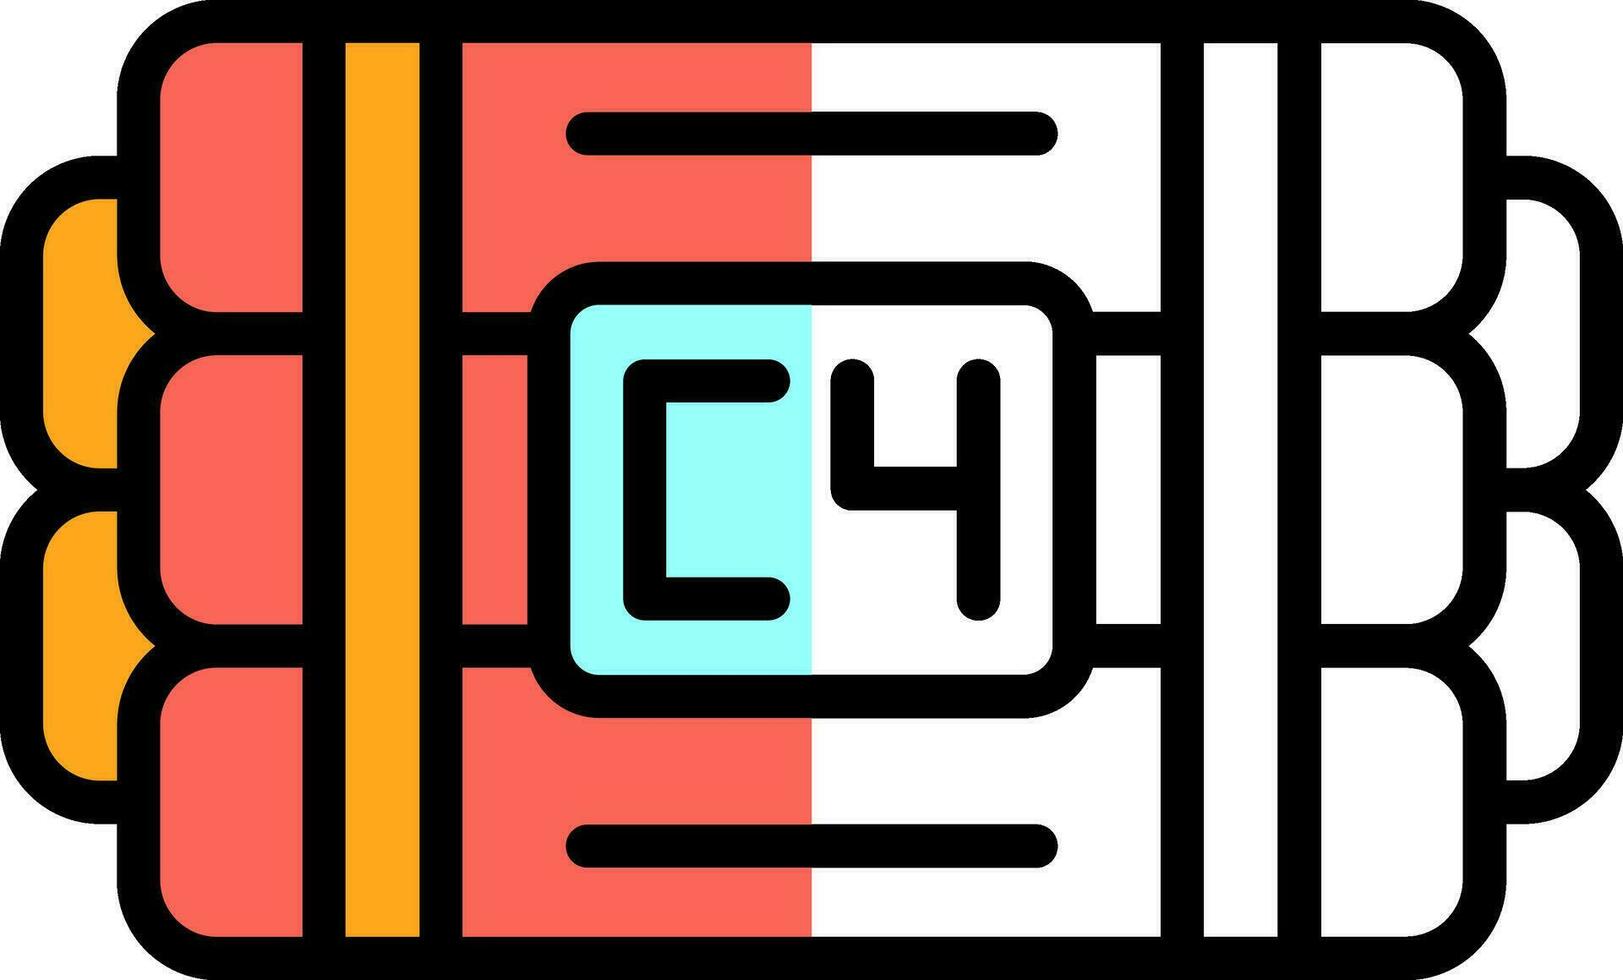 C4 Vector Icon Design